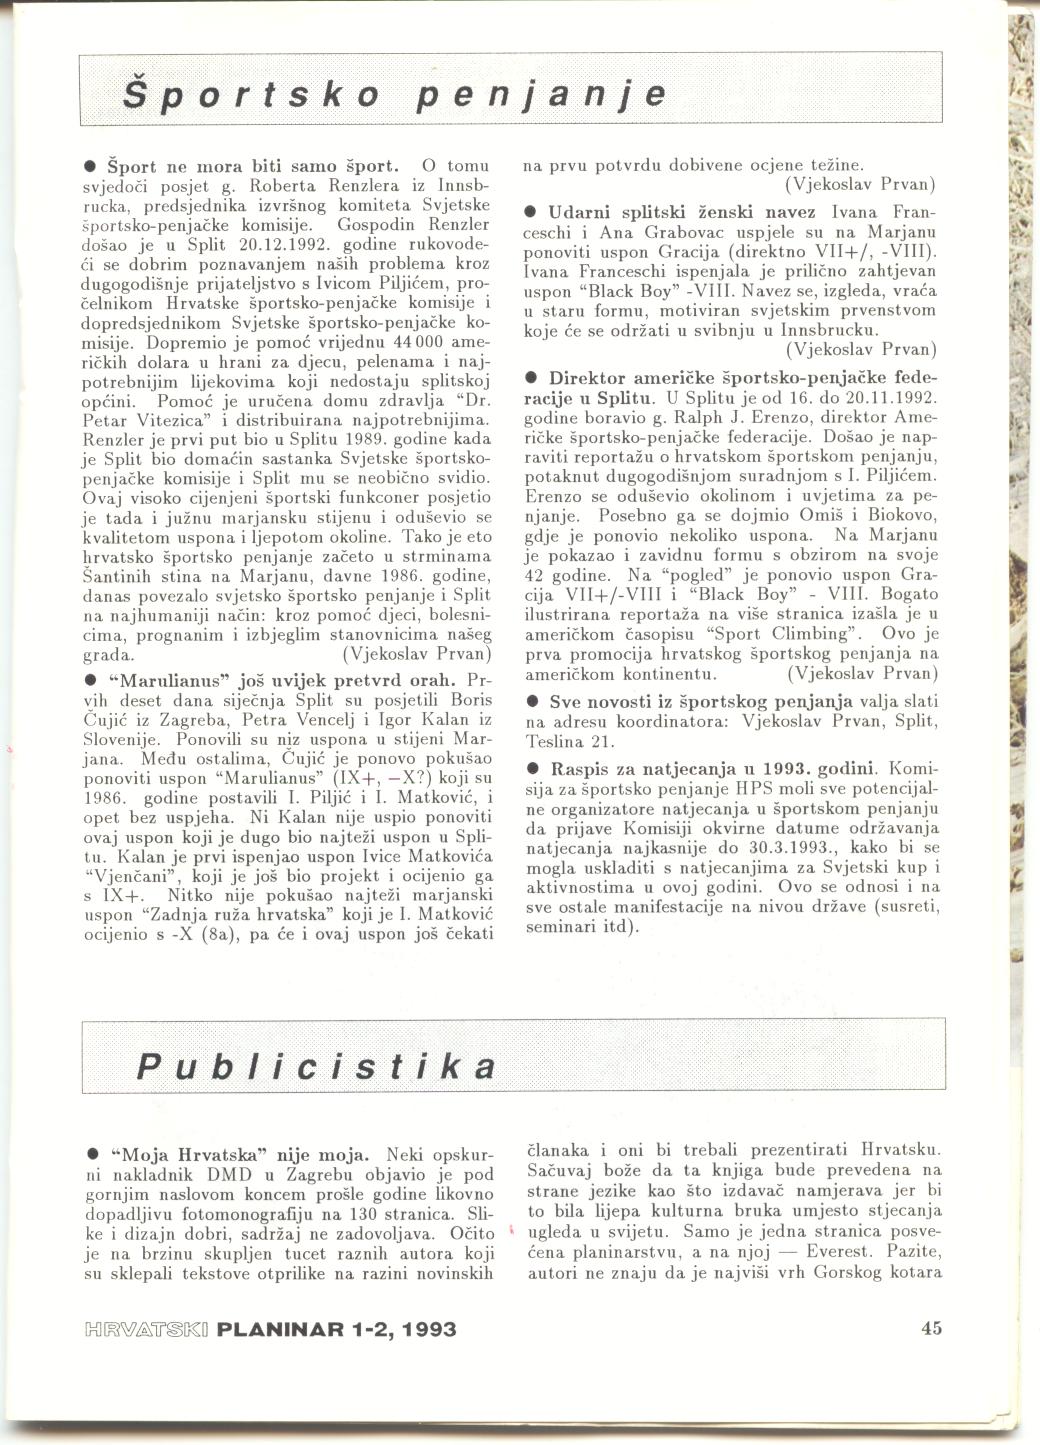 Hrvatski Planinar 1993.